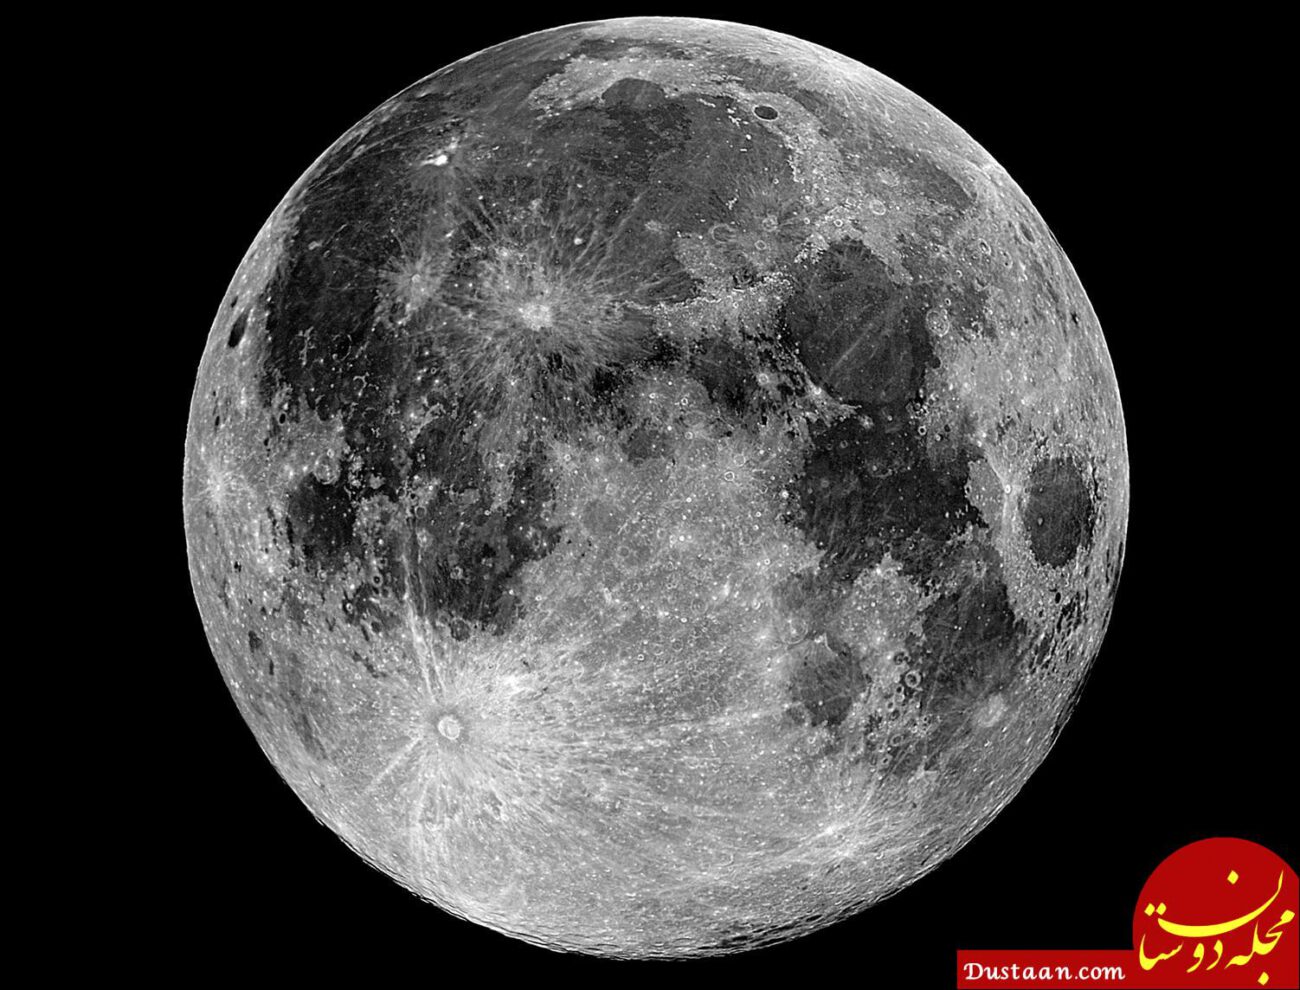 https://bigbangpage.com/wp-content/uploads/2013/07/Moon-Moon-Images-HD.jpg